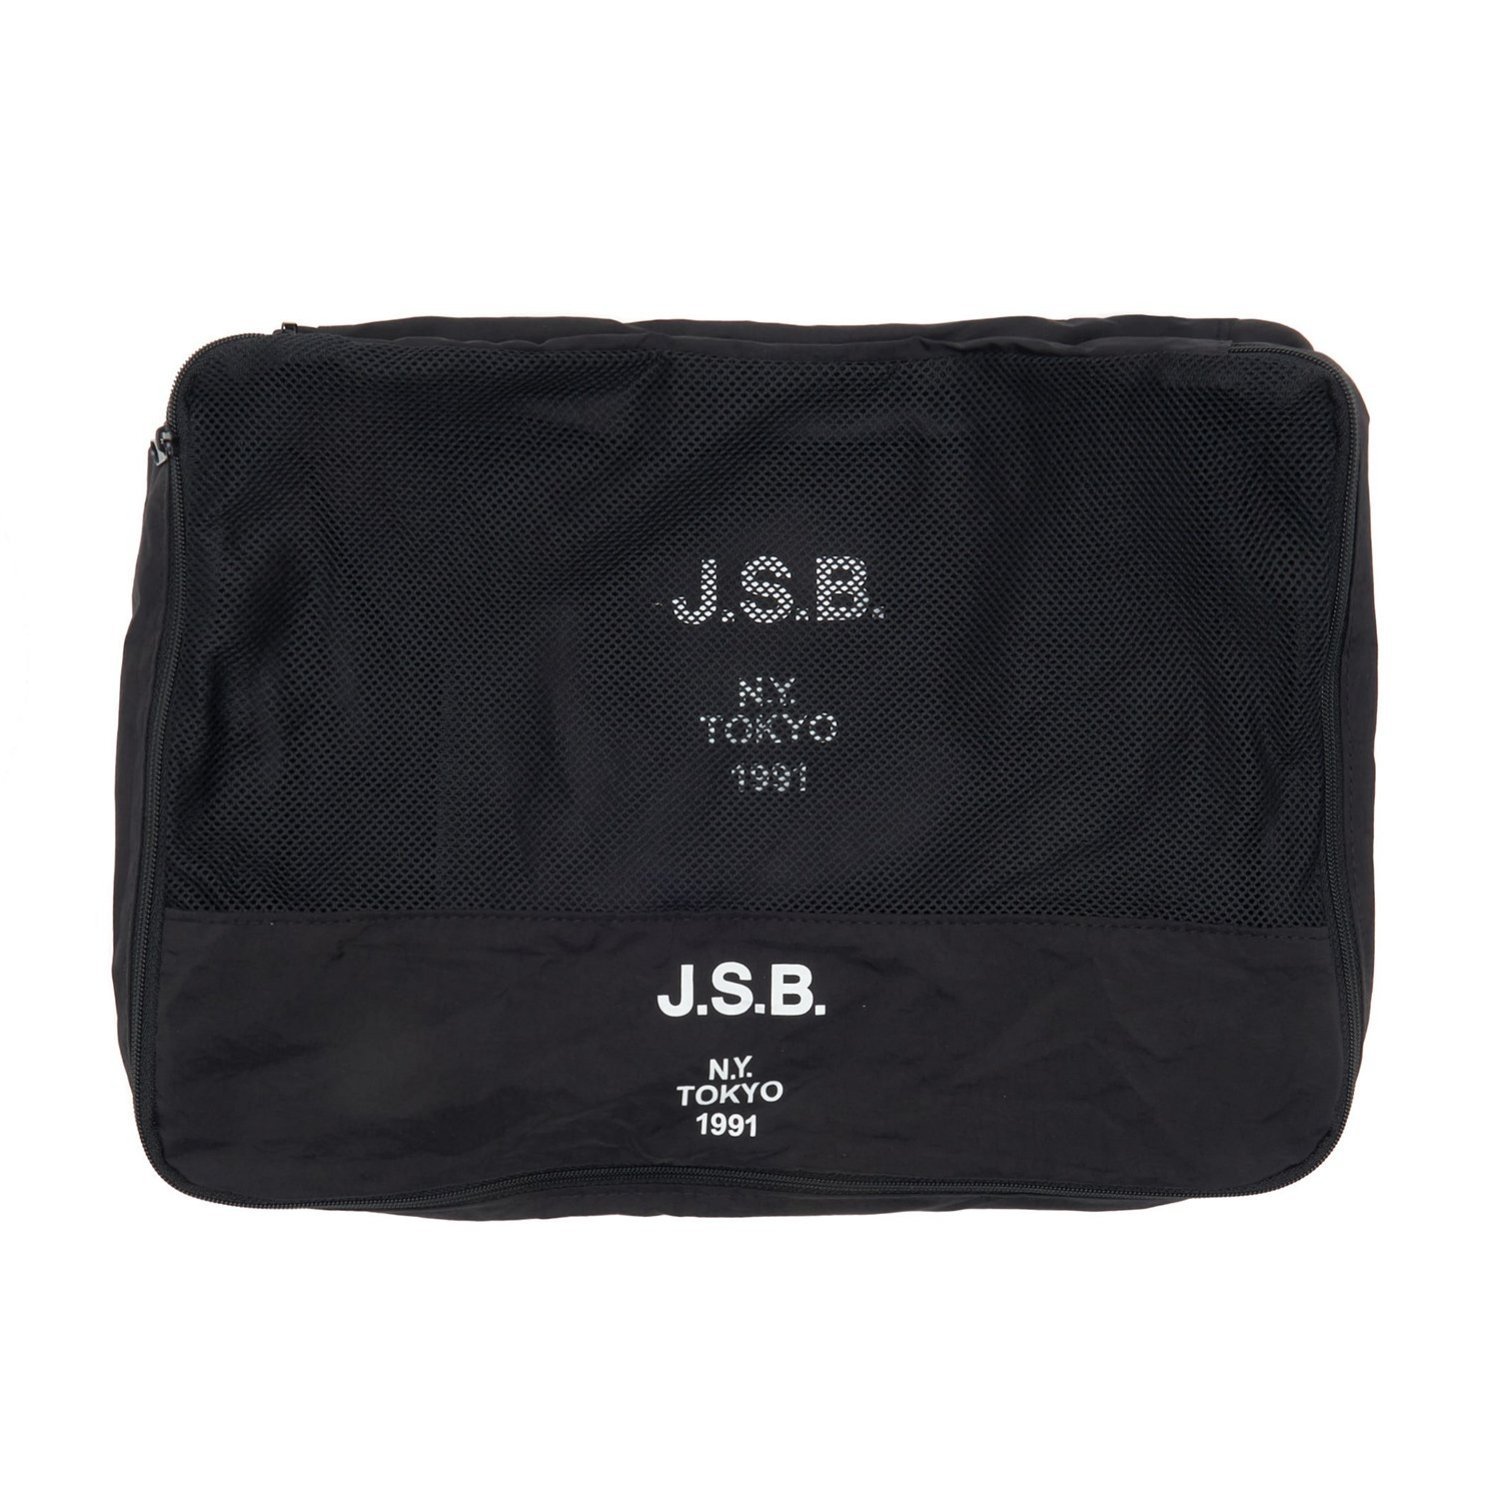 J.S.B. J.S.B./(U)Logo Travel Pouch Set バーチカルガレージ 財布・ポーチ・ケース ポーチ ブラック【送料無料】